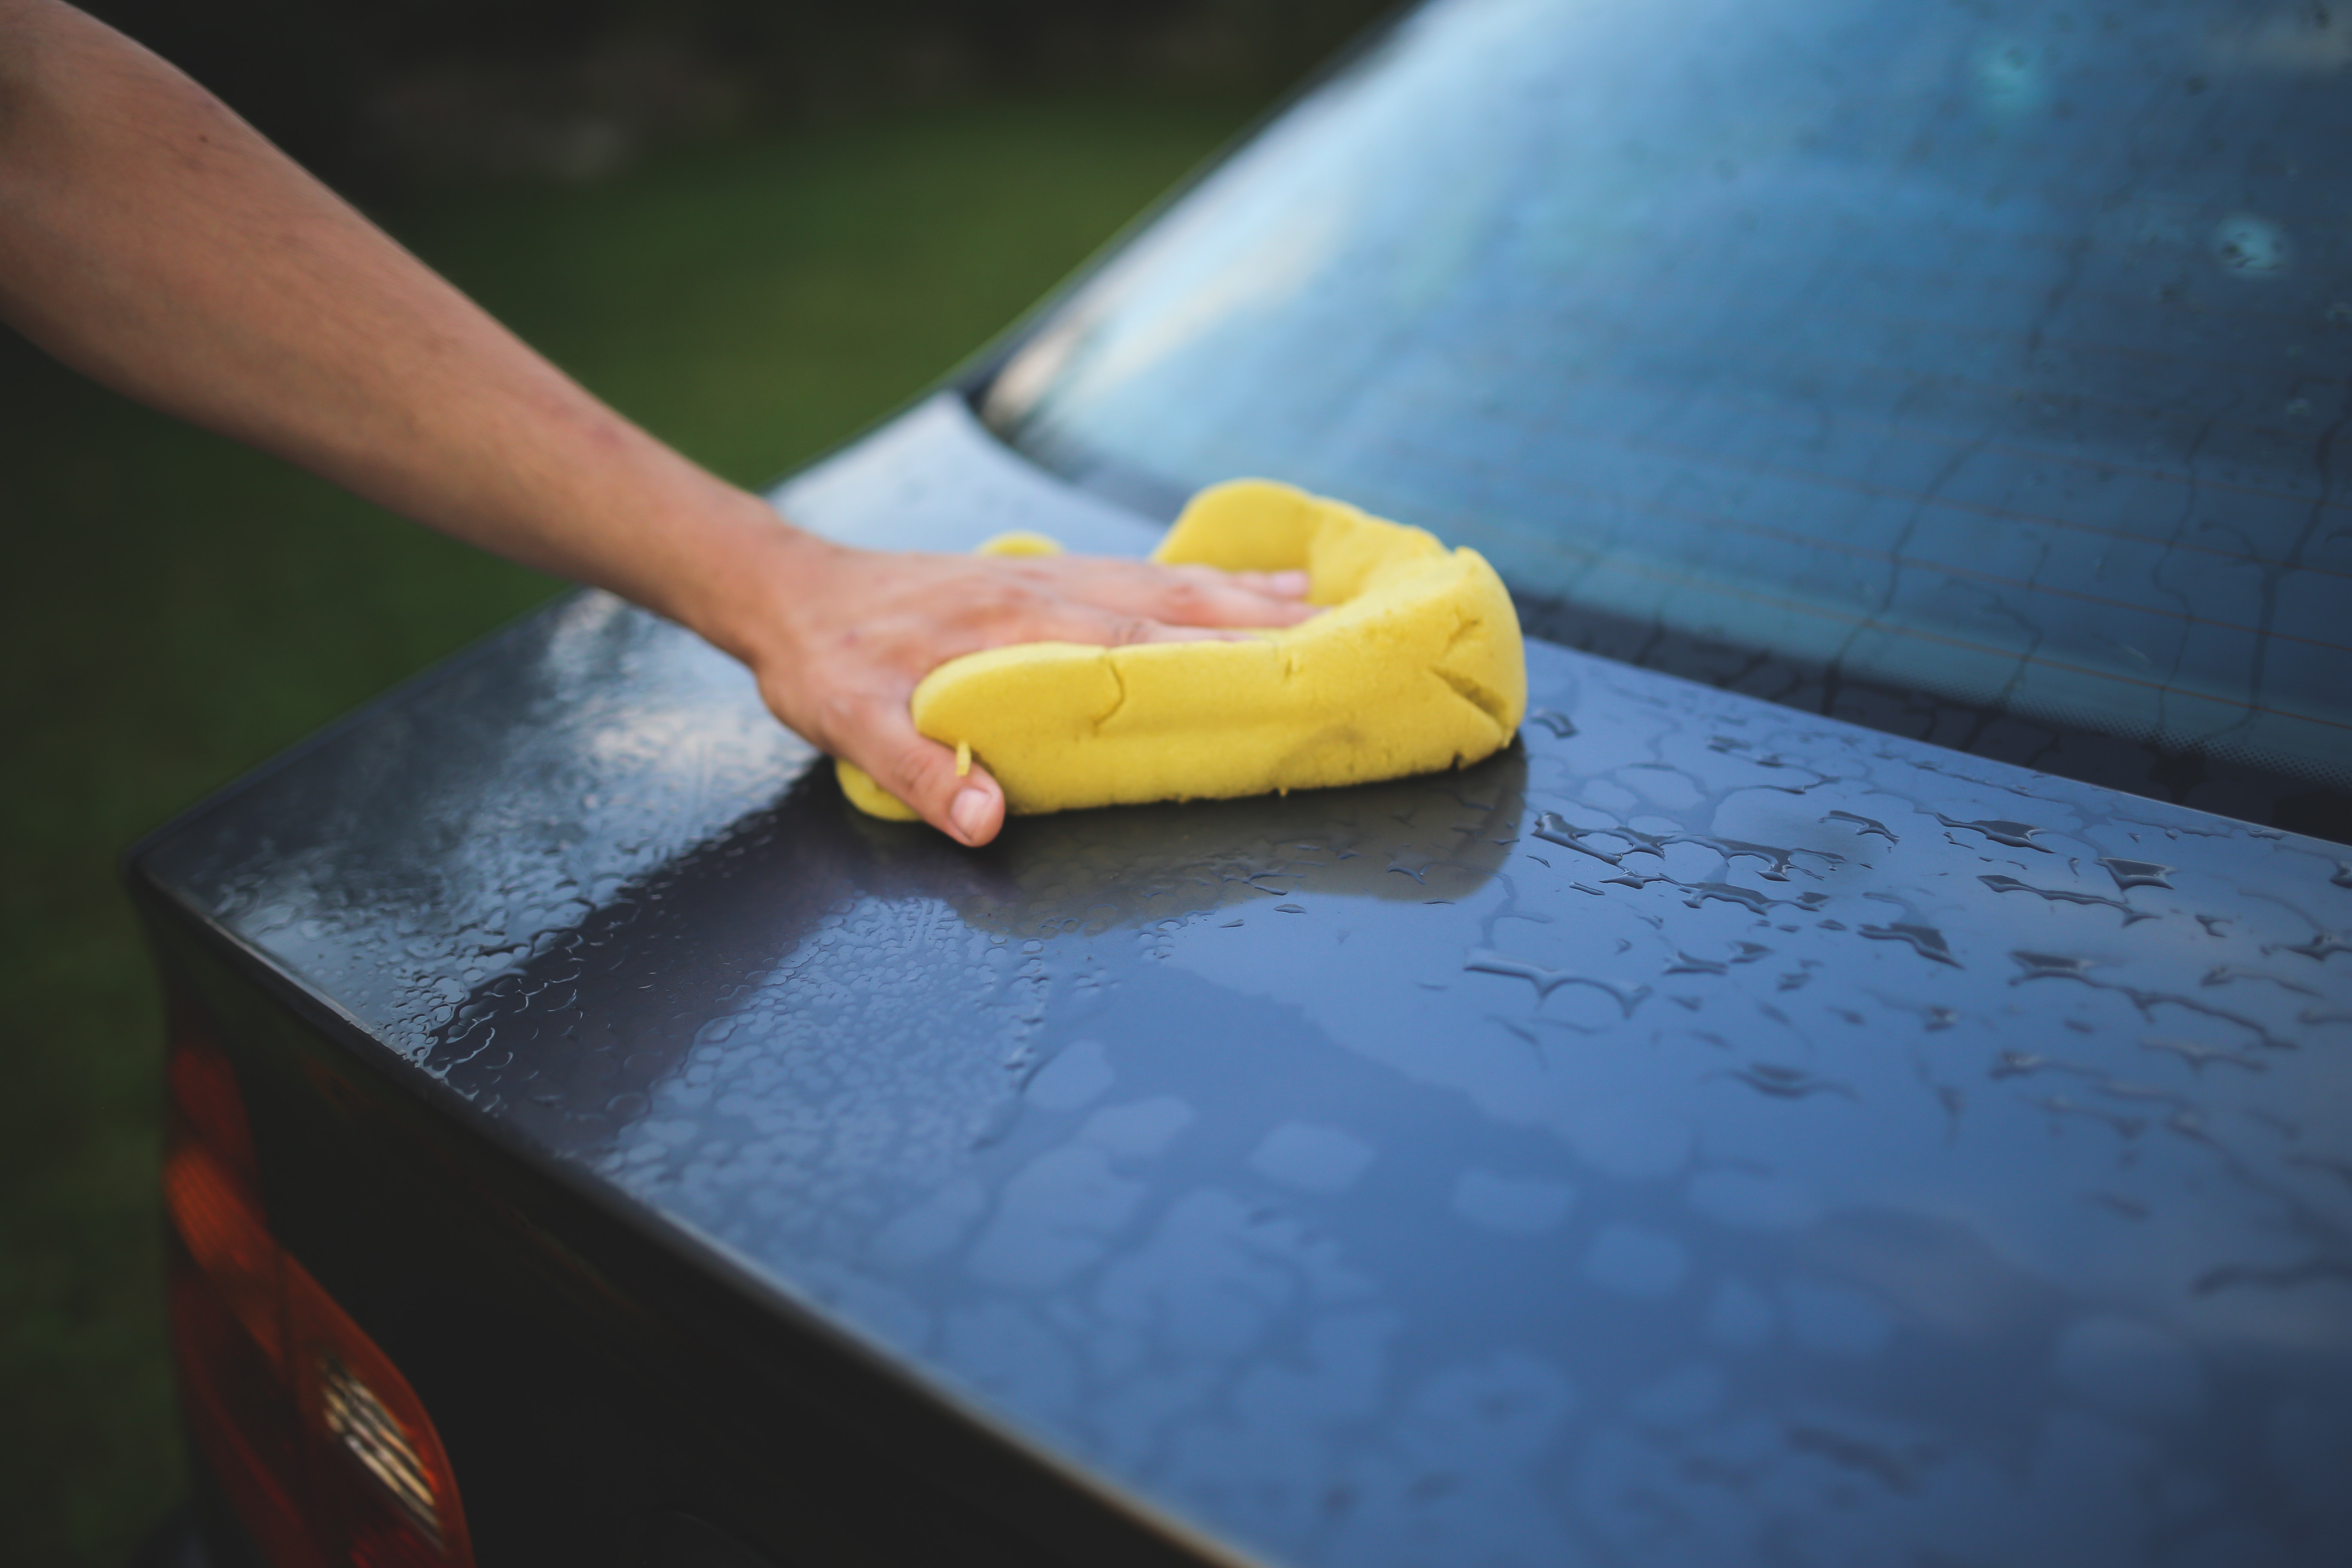 Car wash Semonz Detailing Columbus (614)369-8894